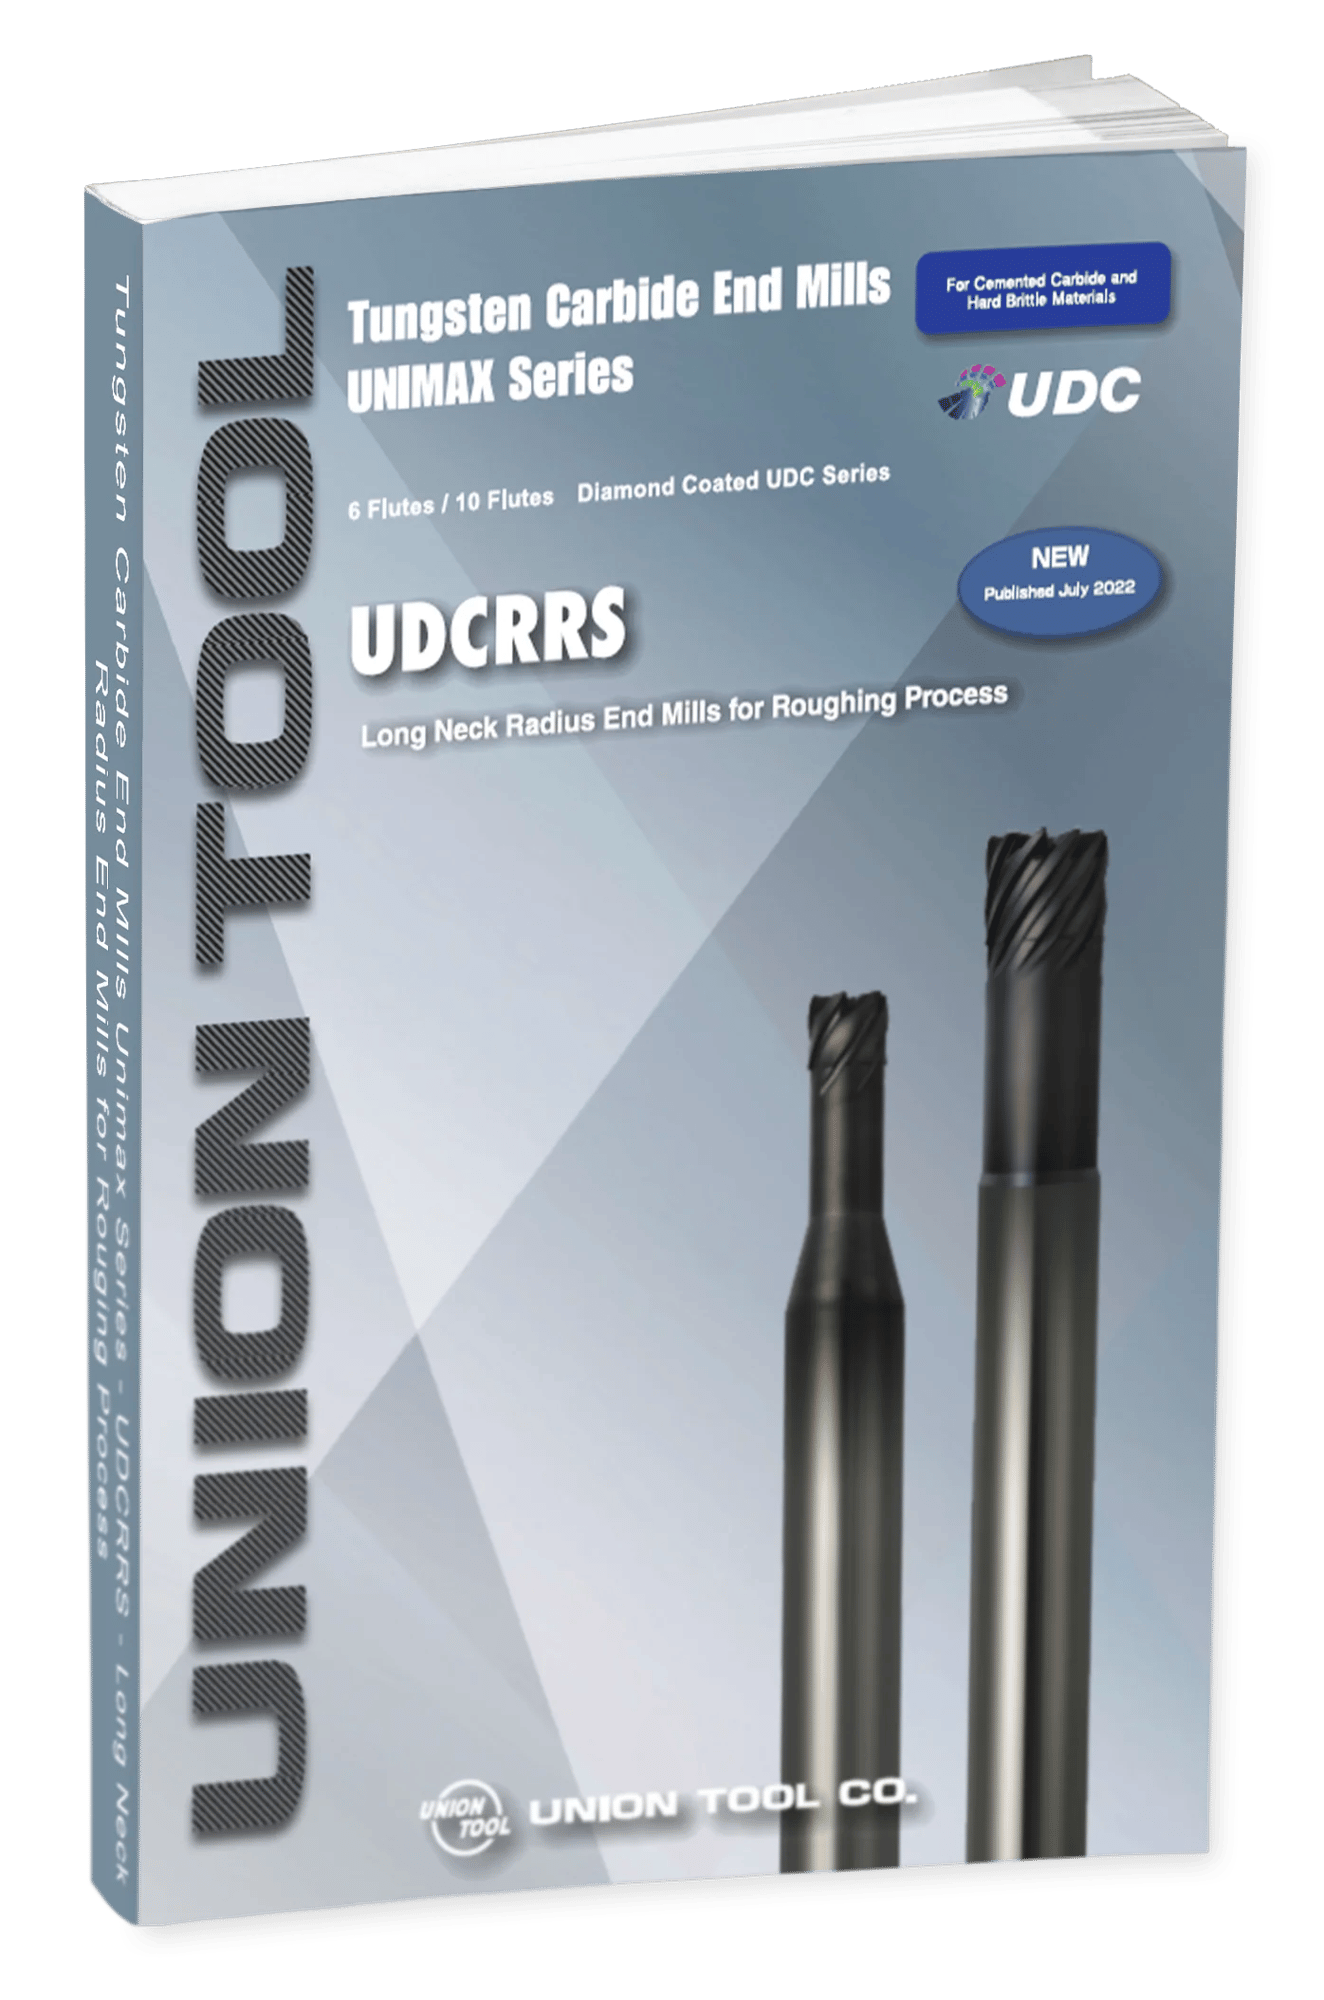 UDCRRS Leaflet 2022-06-30